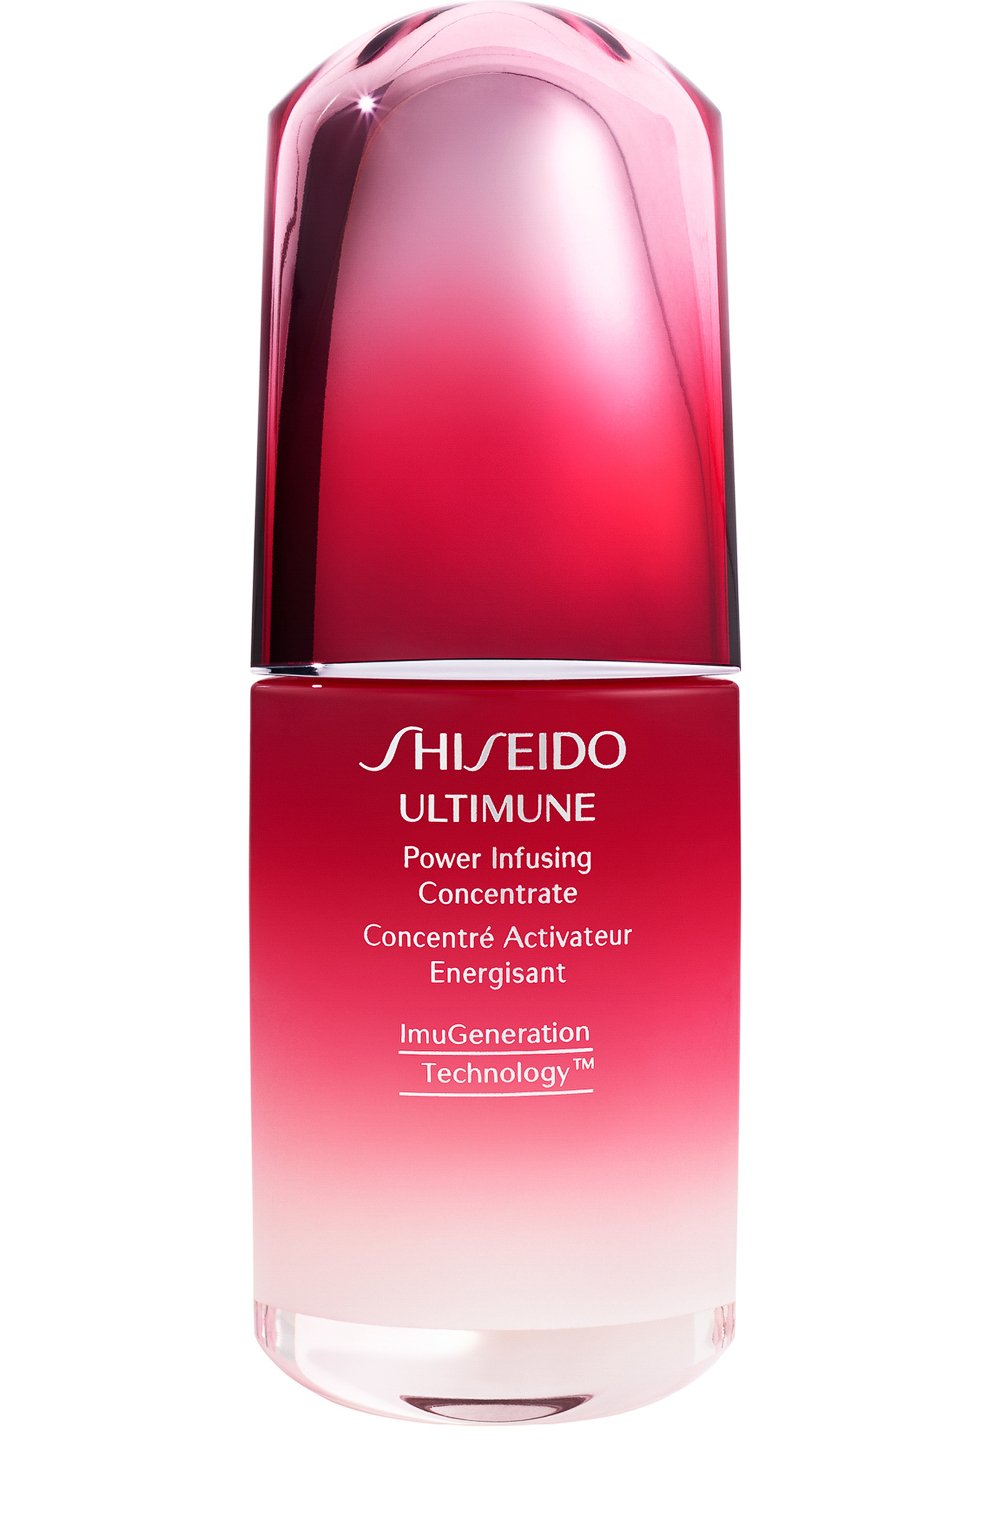 Ultimune концентрат. Shiseido Ultimune концентрат. Shiseido Ultimune Power infusing Serum. Шисейдо сыворотка для лица. Shiseido сколько стоит.